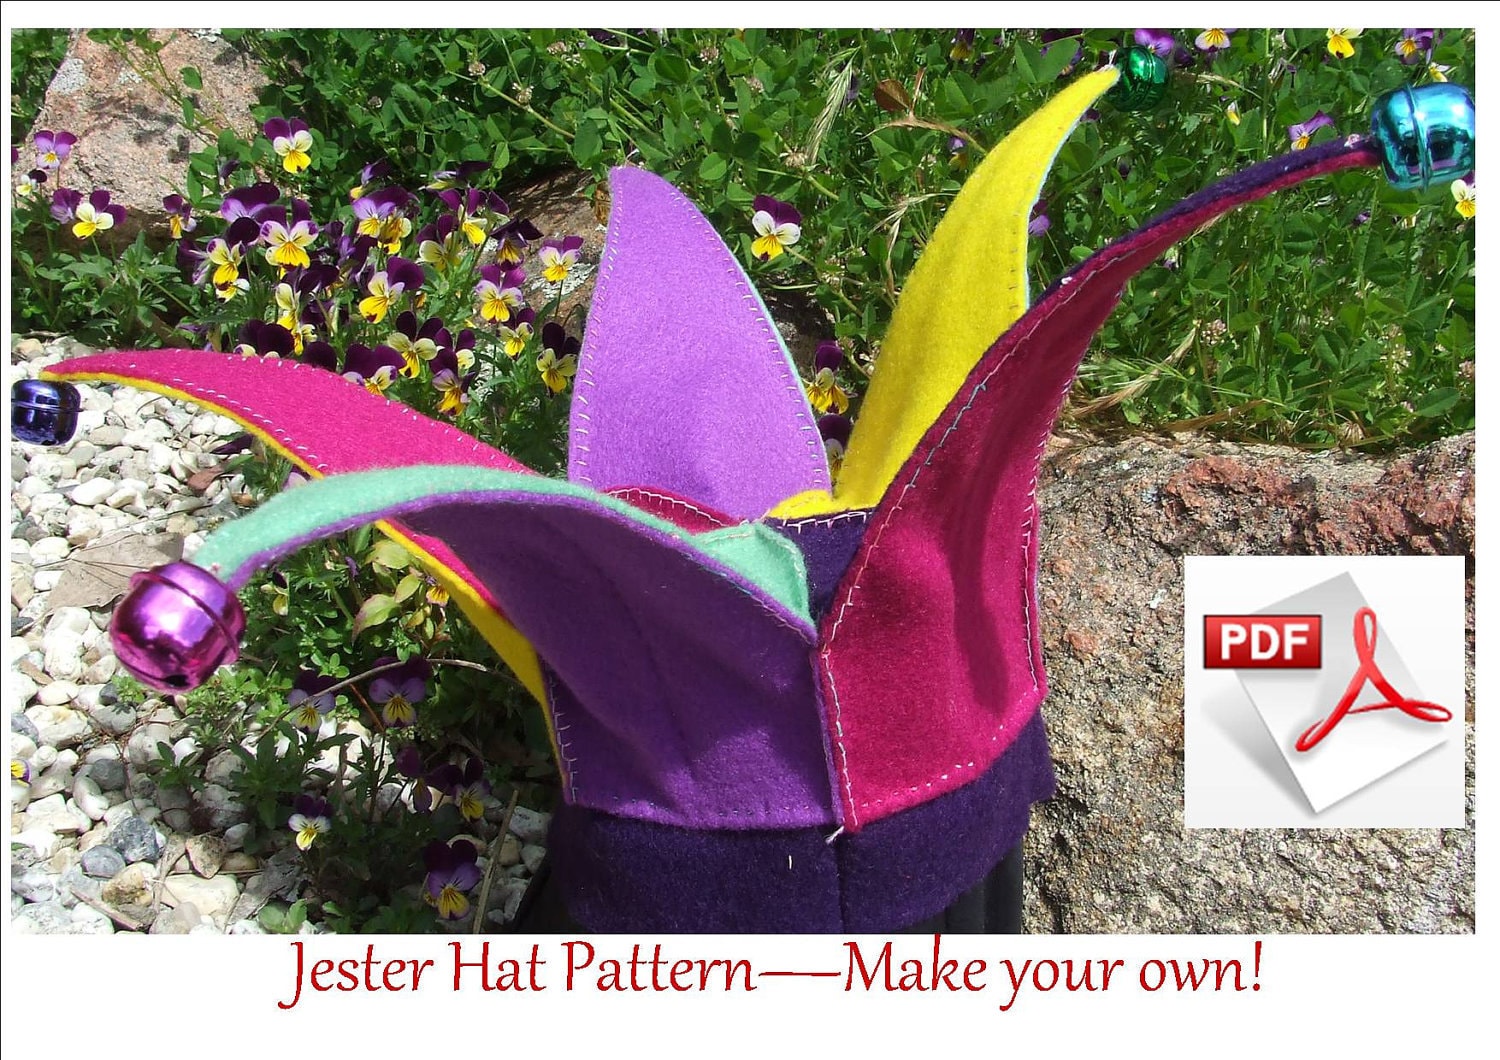 Felt Jester Hat pattern. Hand sewing PDF pattern. Fits